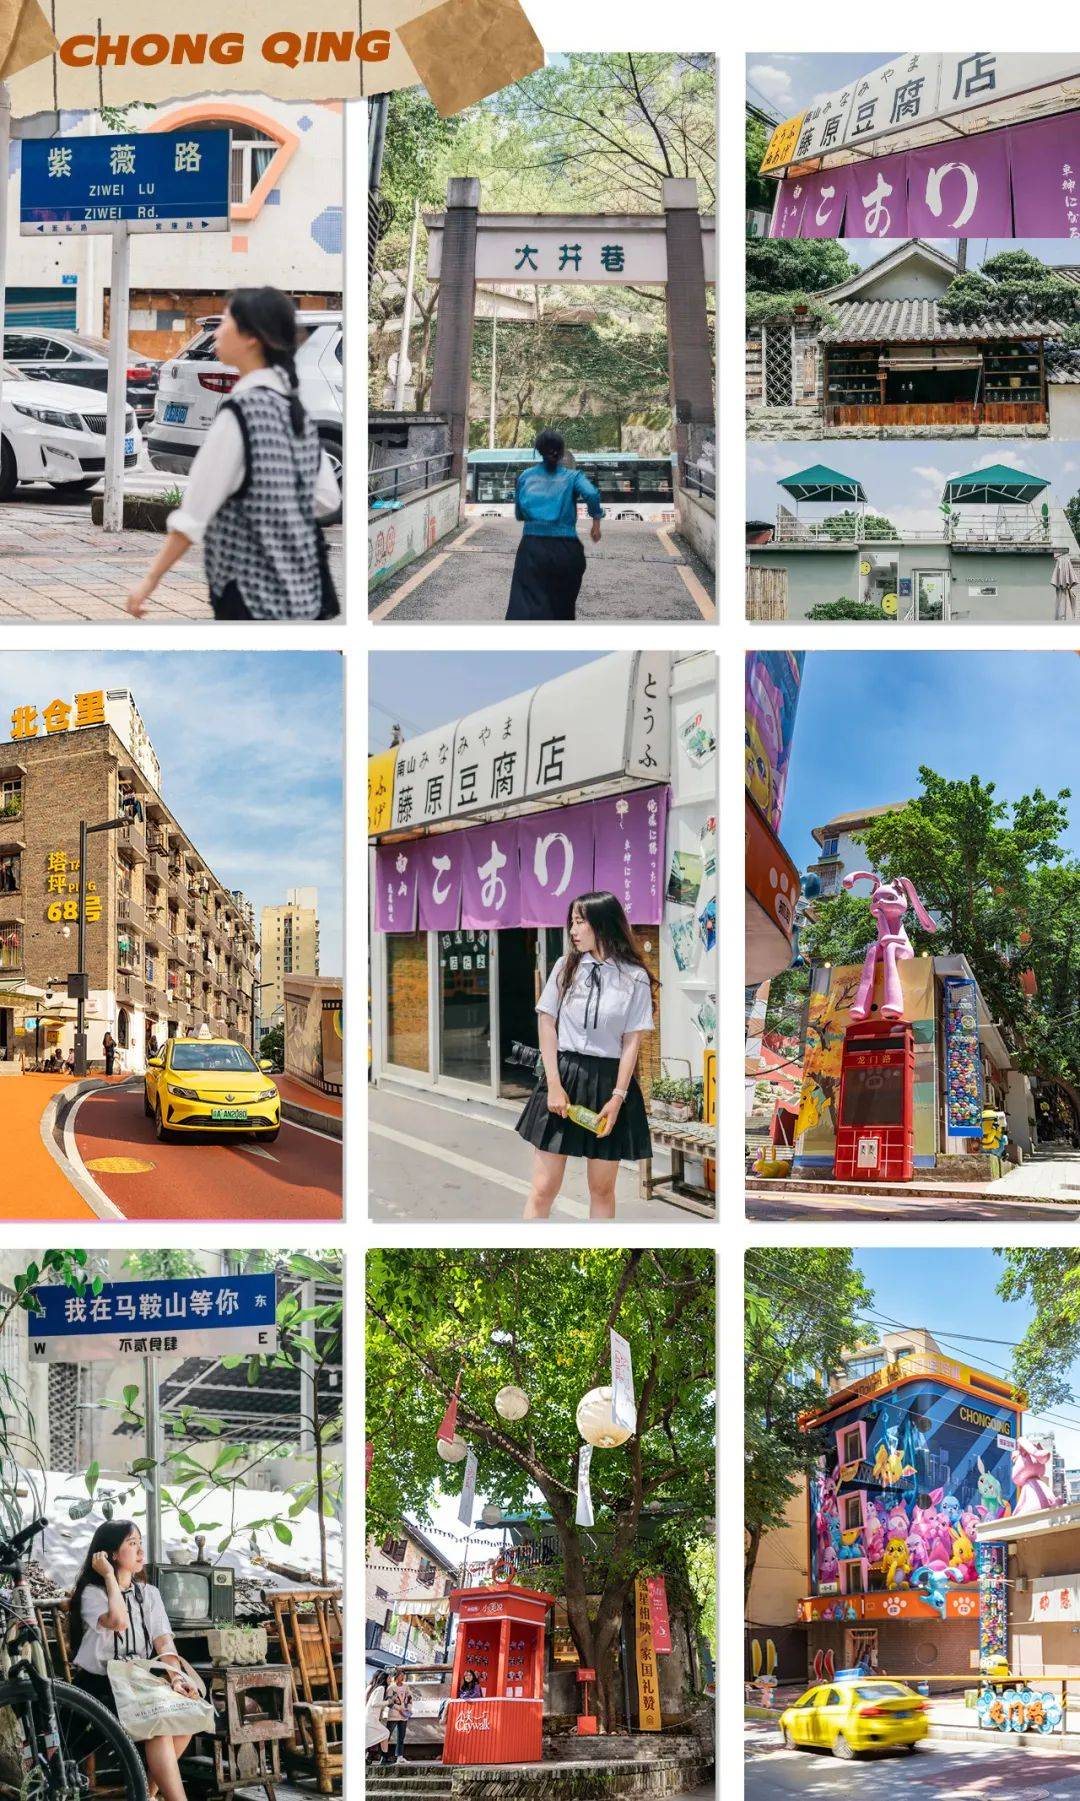 收藏!重庆citywalk!这7条特色街区值得一逛!